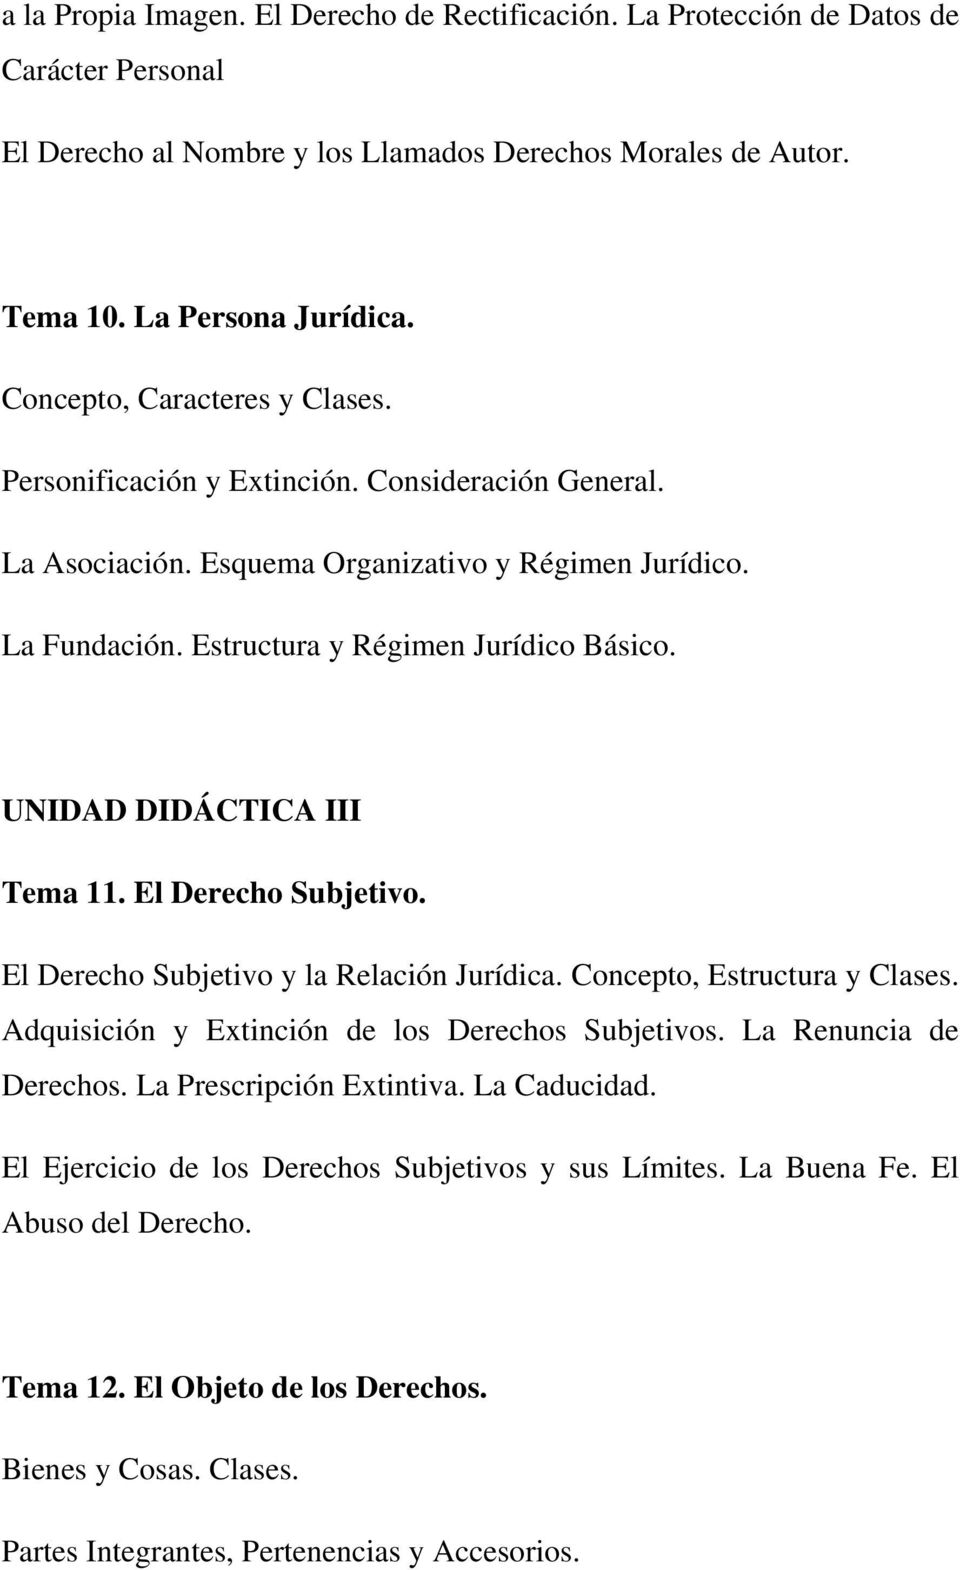 UNIDAD DIDÁCTICA III Tema 11. El Derecho Subjetivo. El Derecho Subjetivo y la Relación Jurídica. Concepto, Estructura y Clases. Adquisición y Extinción de los Derechos Subjetivos.